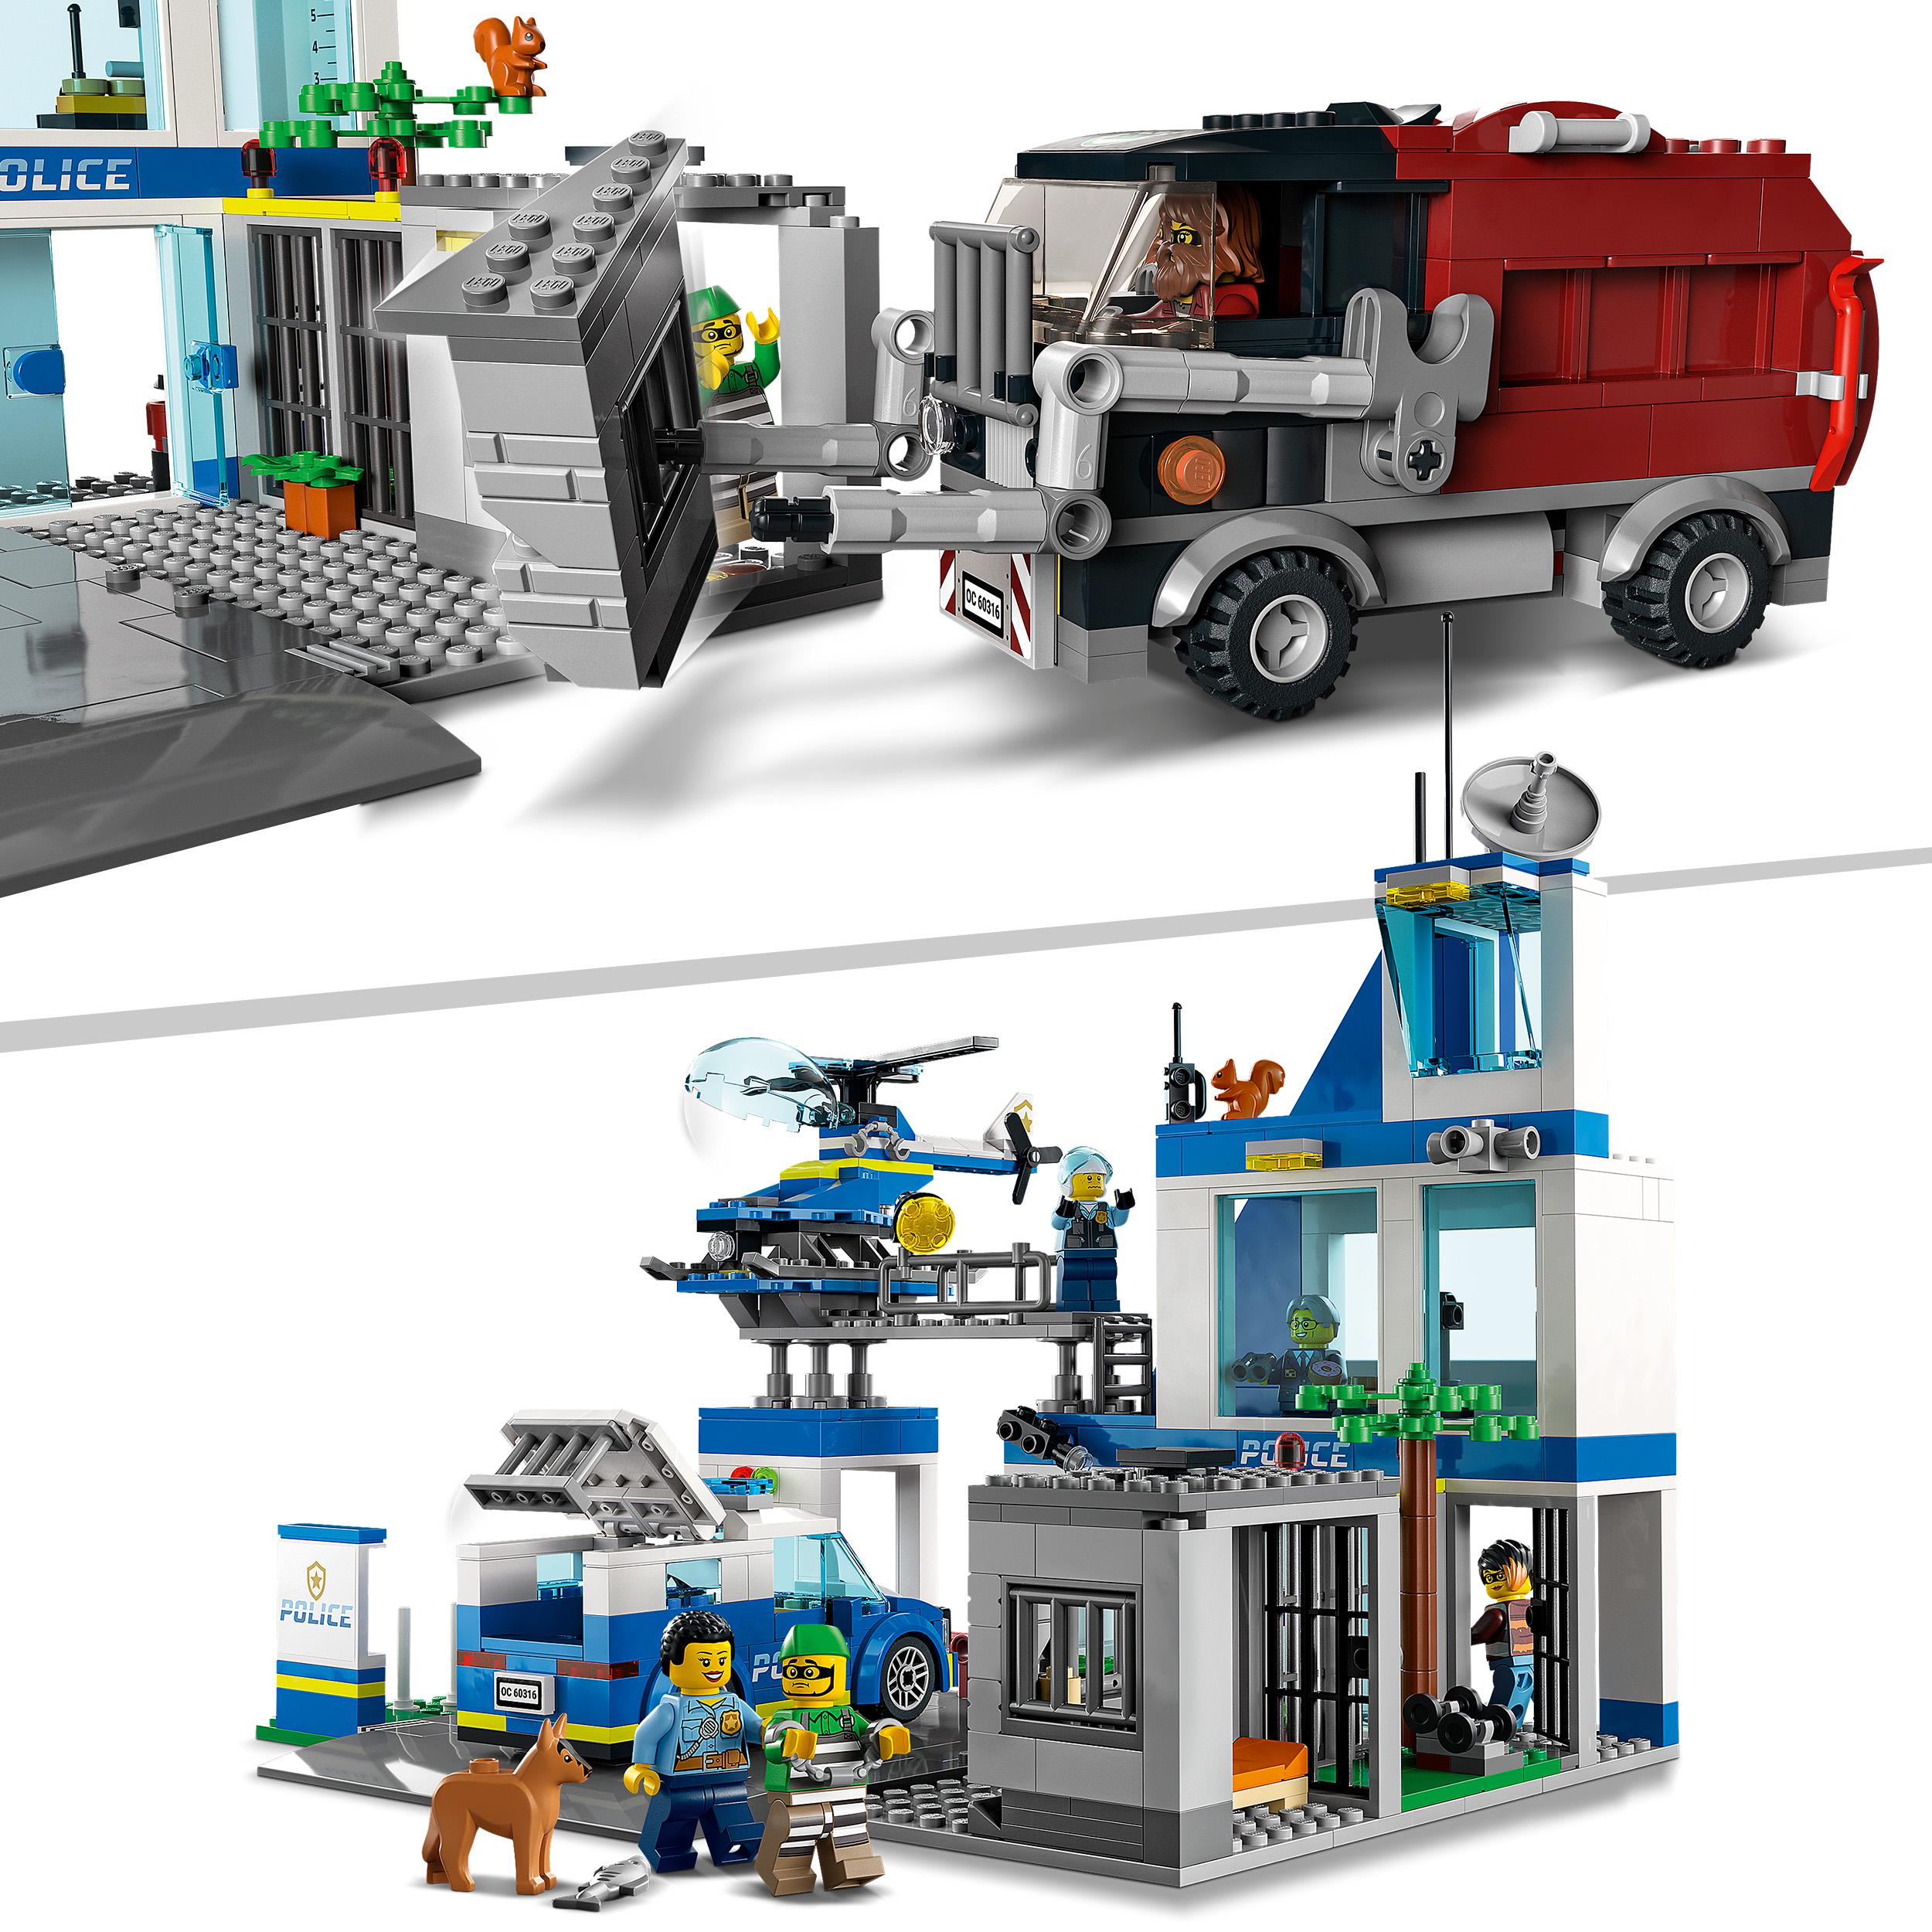 Lego city police stazione di polizia, con camion della spazzatura ed elicottero giocattolo, per bambini di 6+ anni, 60316 - LEGO CITY, Lego